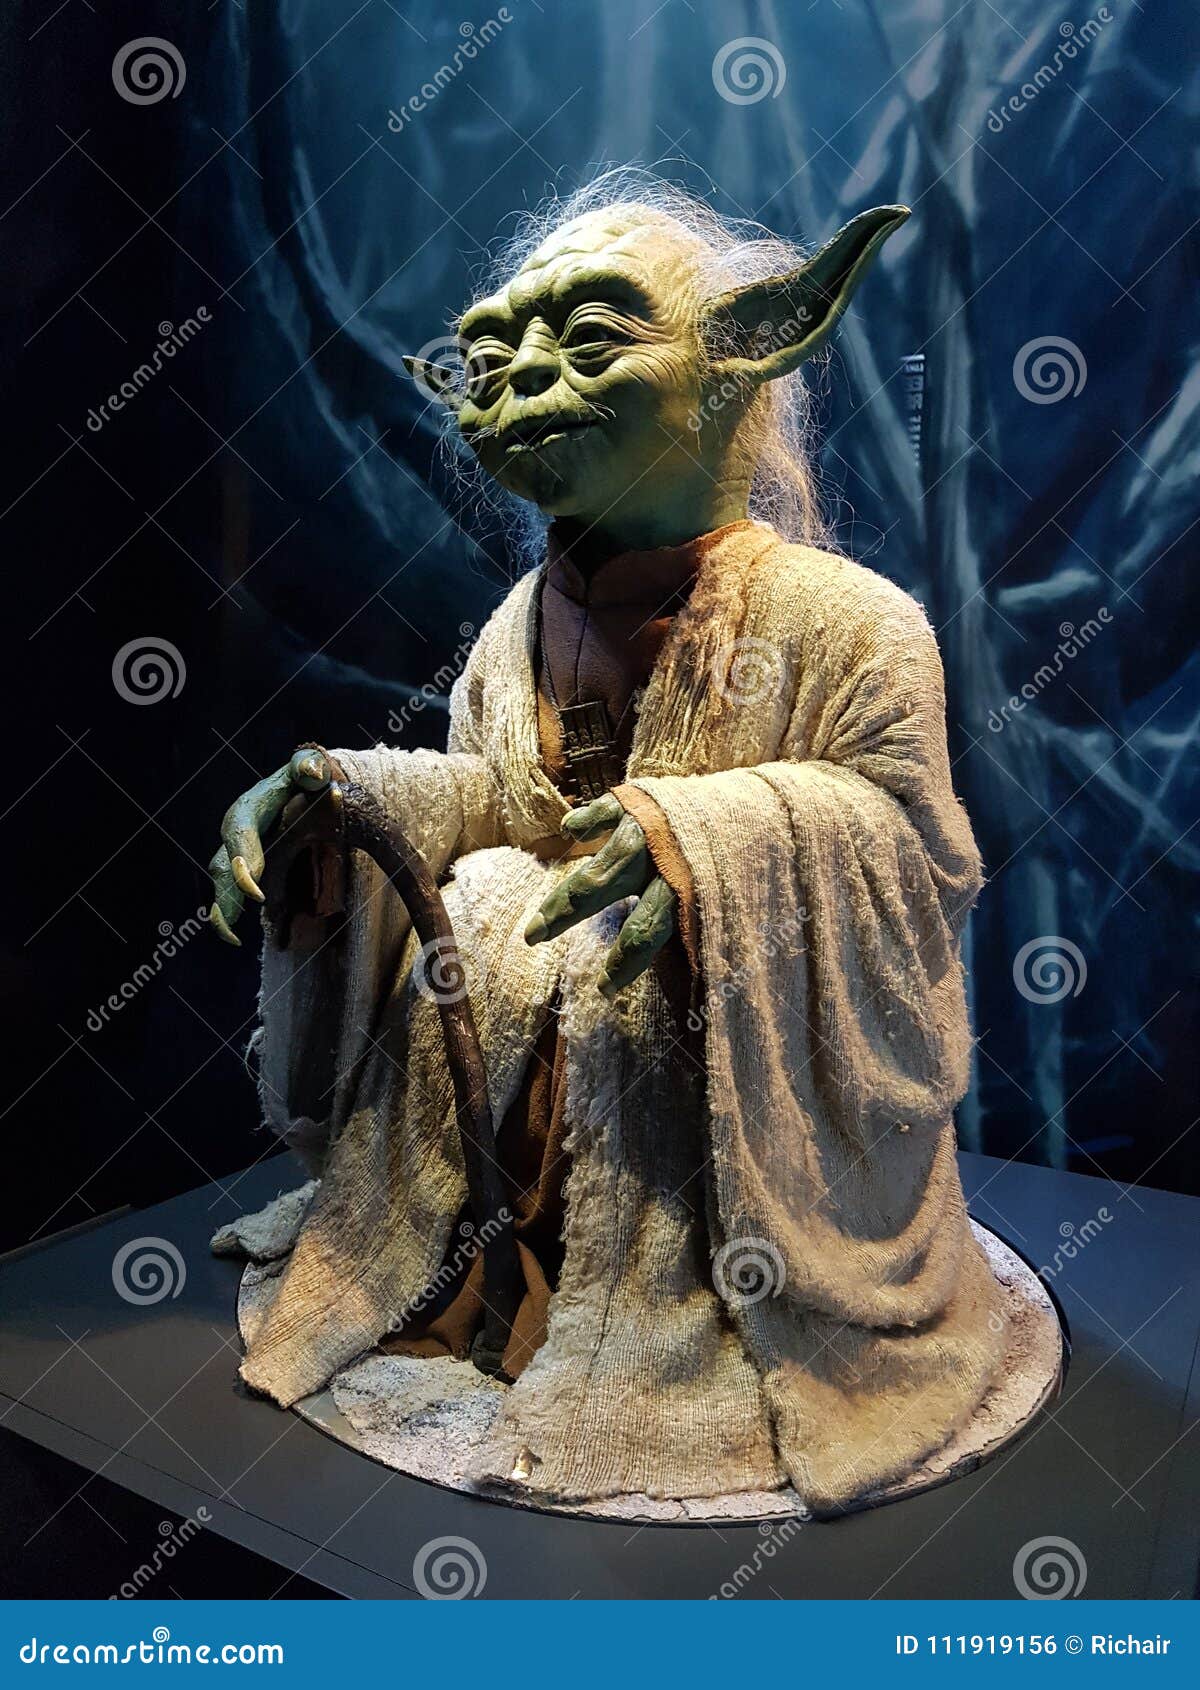 1,161 Yoda Fotos de stock - Fotos libres de regalías de Dreamstime